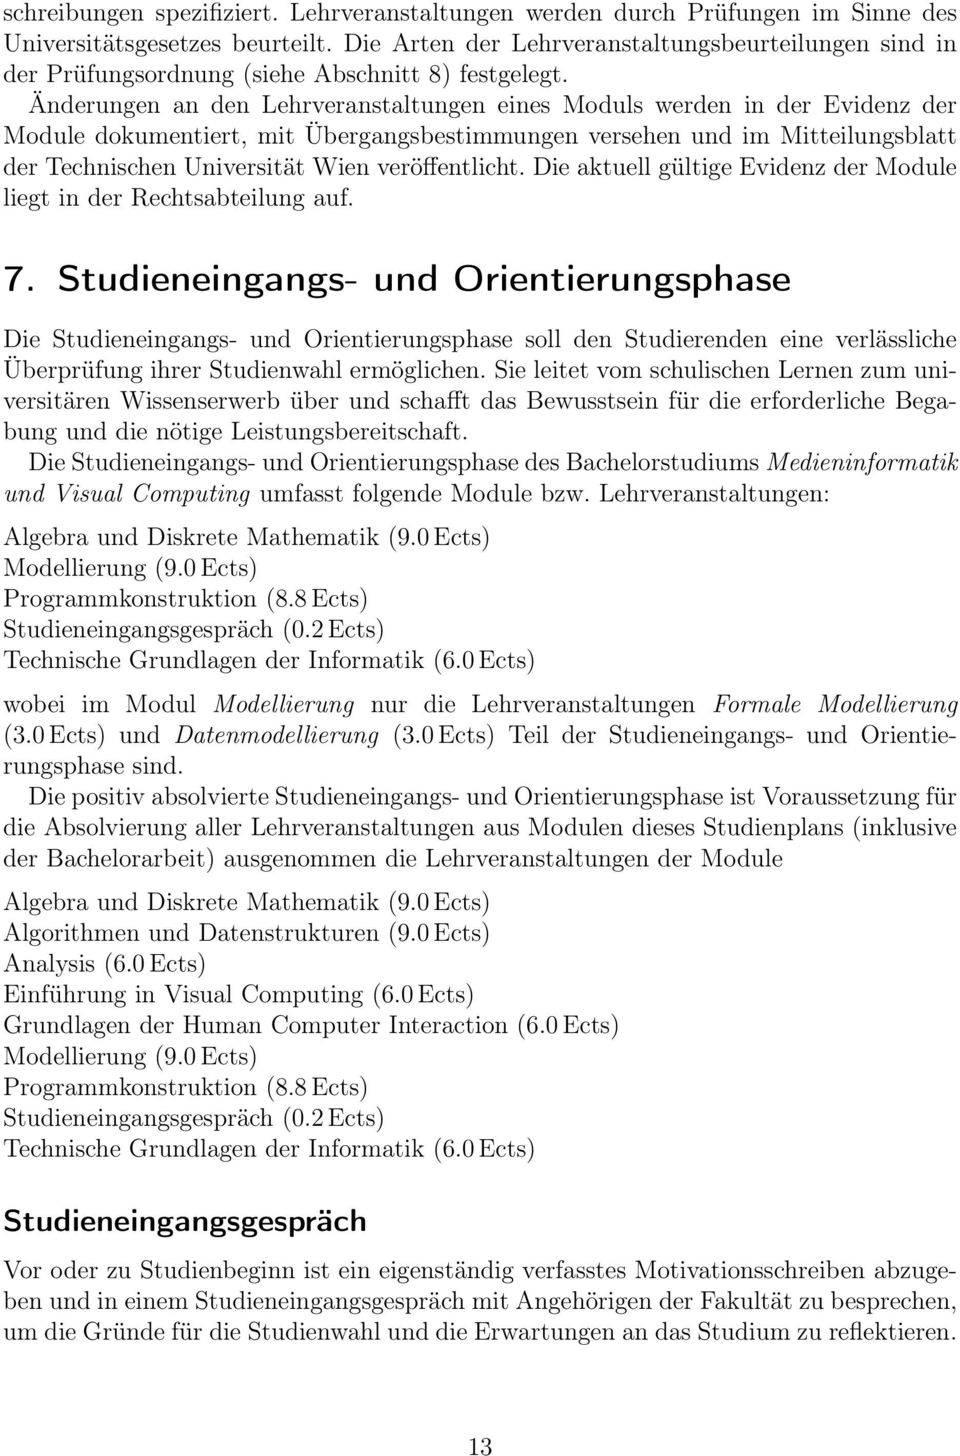 Änderungen an den Lehrveranstaltungen eines Moduls werden in der Evidenz der Module dokumentiert, mit Übergangsbestimmungen versehen und im Mitteilungsblatt der Technischen Universität Wien